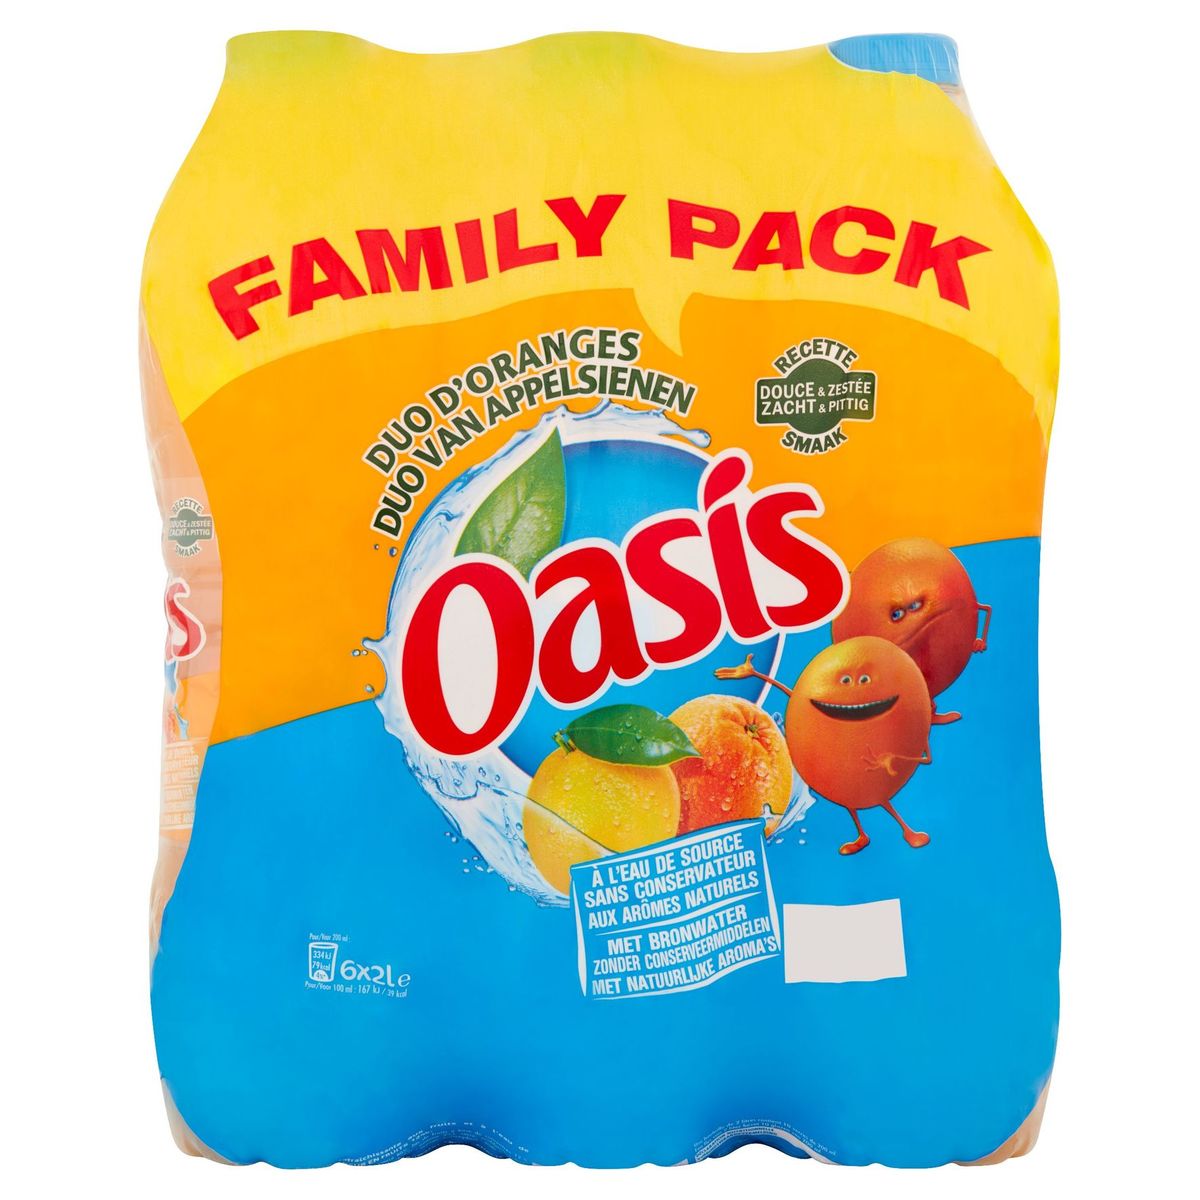 Oasis Duo Sinaasappel 6 x 2 L